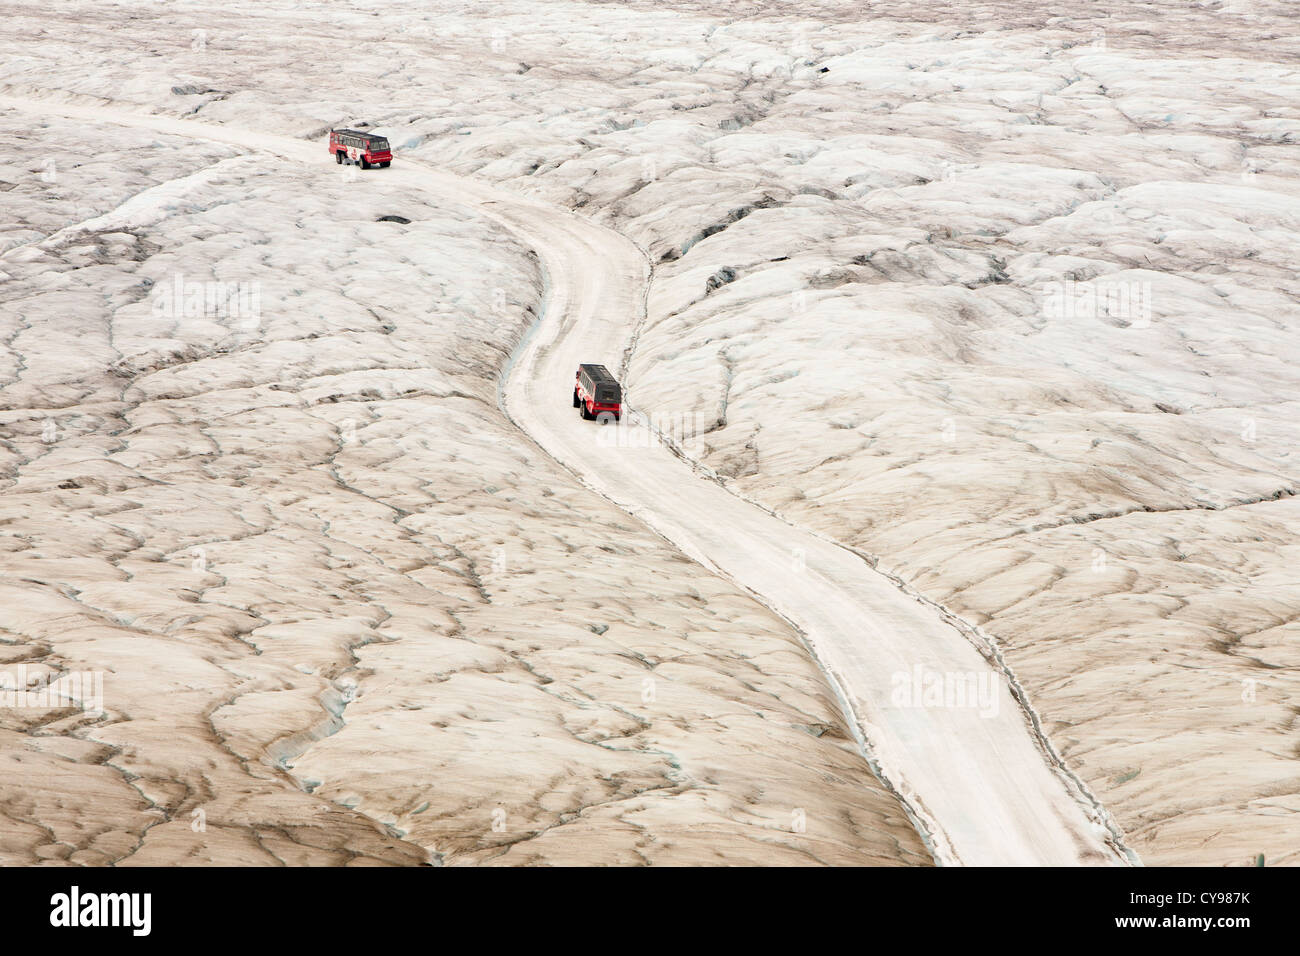 Turismo buggy di ghiaccio del Ghiacciaio Athabasca che sta svanendo in modo estremamente rapido e ha perso oltre il 60% della sua massa di ghiaccio Foto Stock